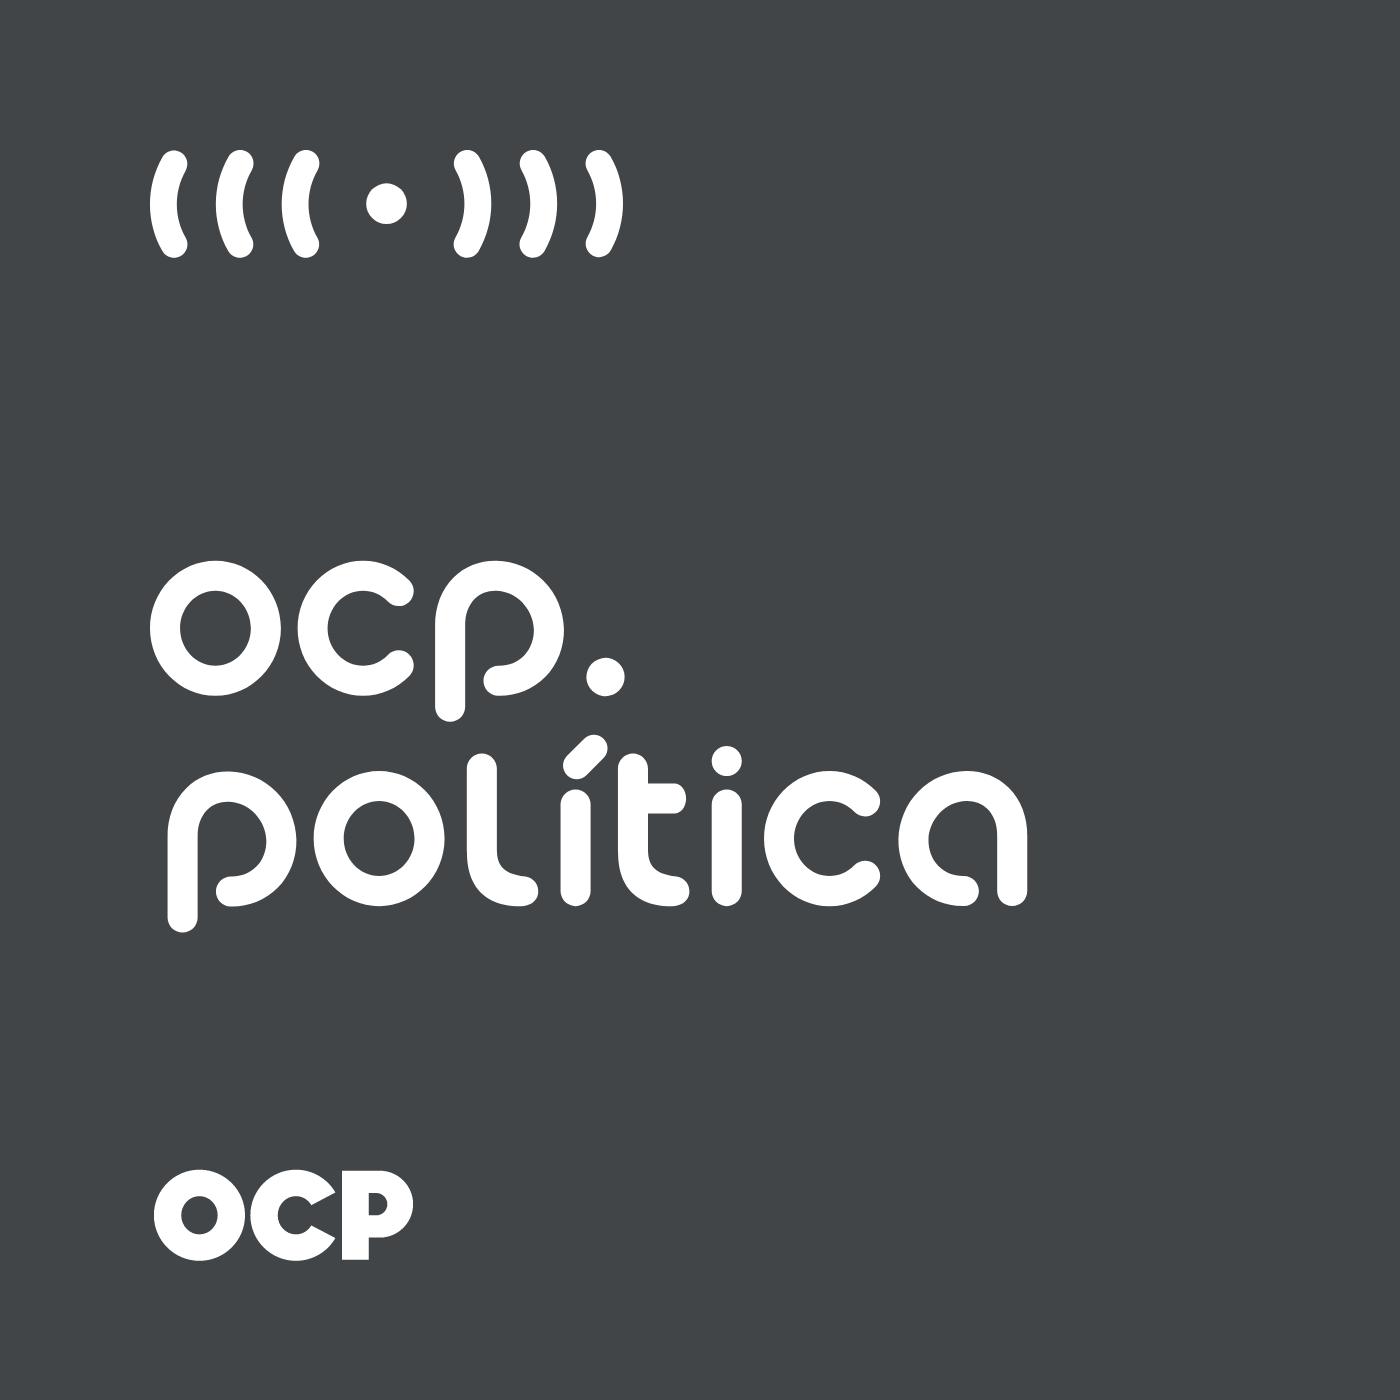 Podcast OCP Política: Entrevista com o Prefeito Antídio Lunelli - parte 04